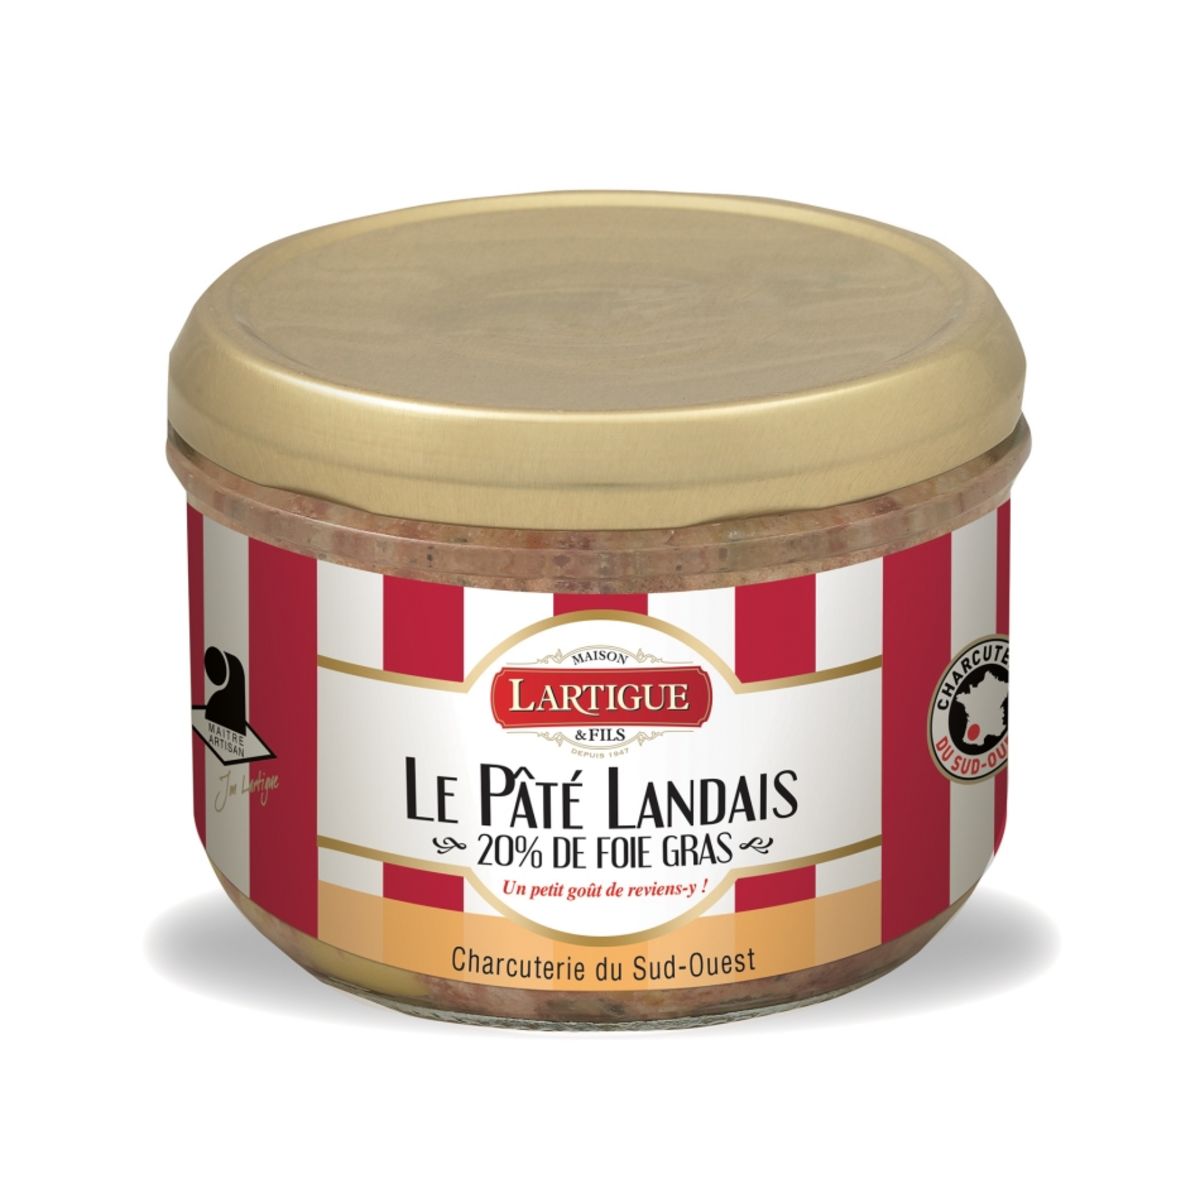 LARTIGUE Pâté Landais 20% de foie gras 180g